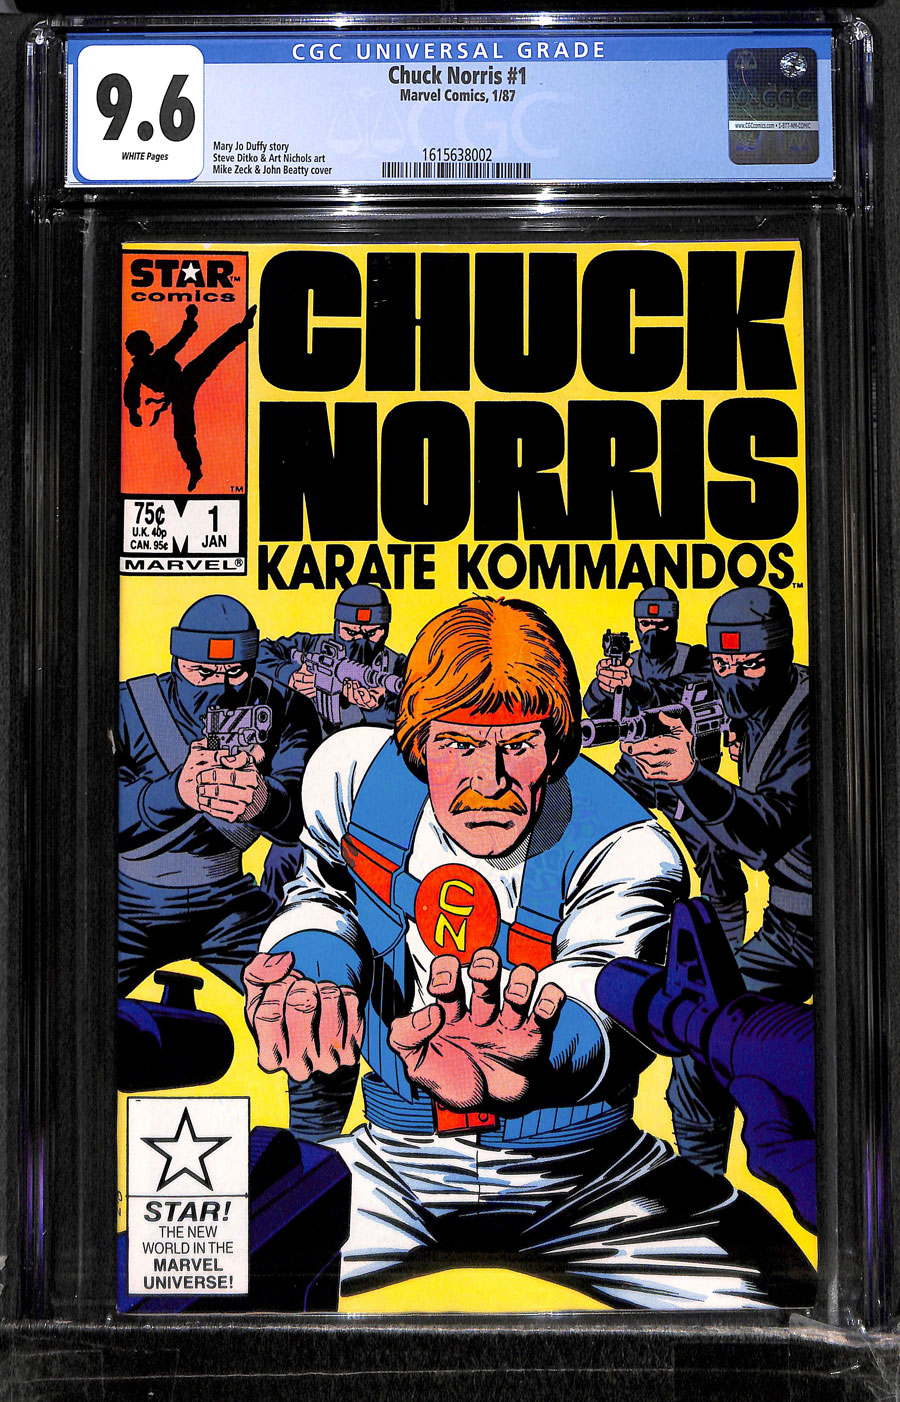 Metropolis Comics and Collectibles - CHUCK NORRIS KARATE KOMMANDOS #1 - CGC  NM+: 